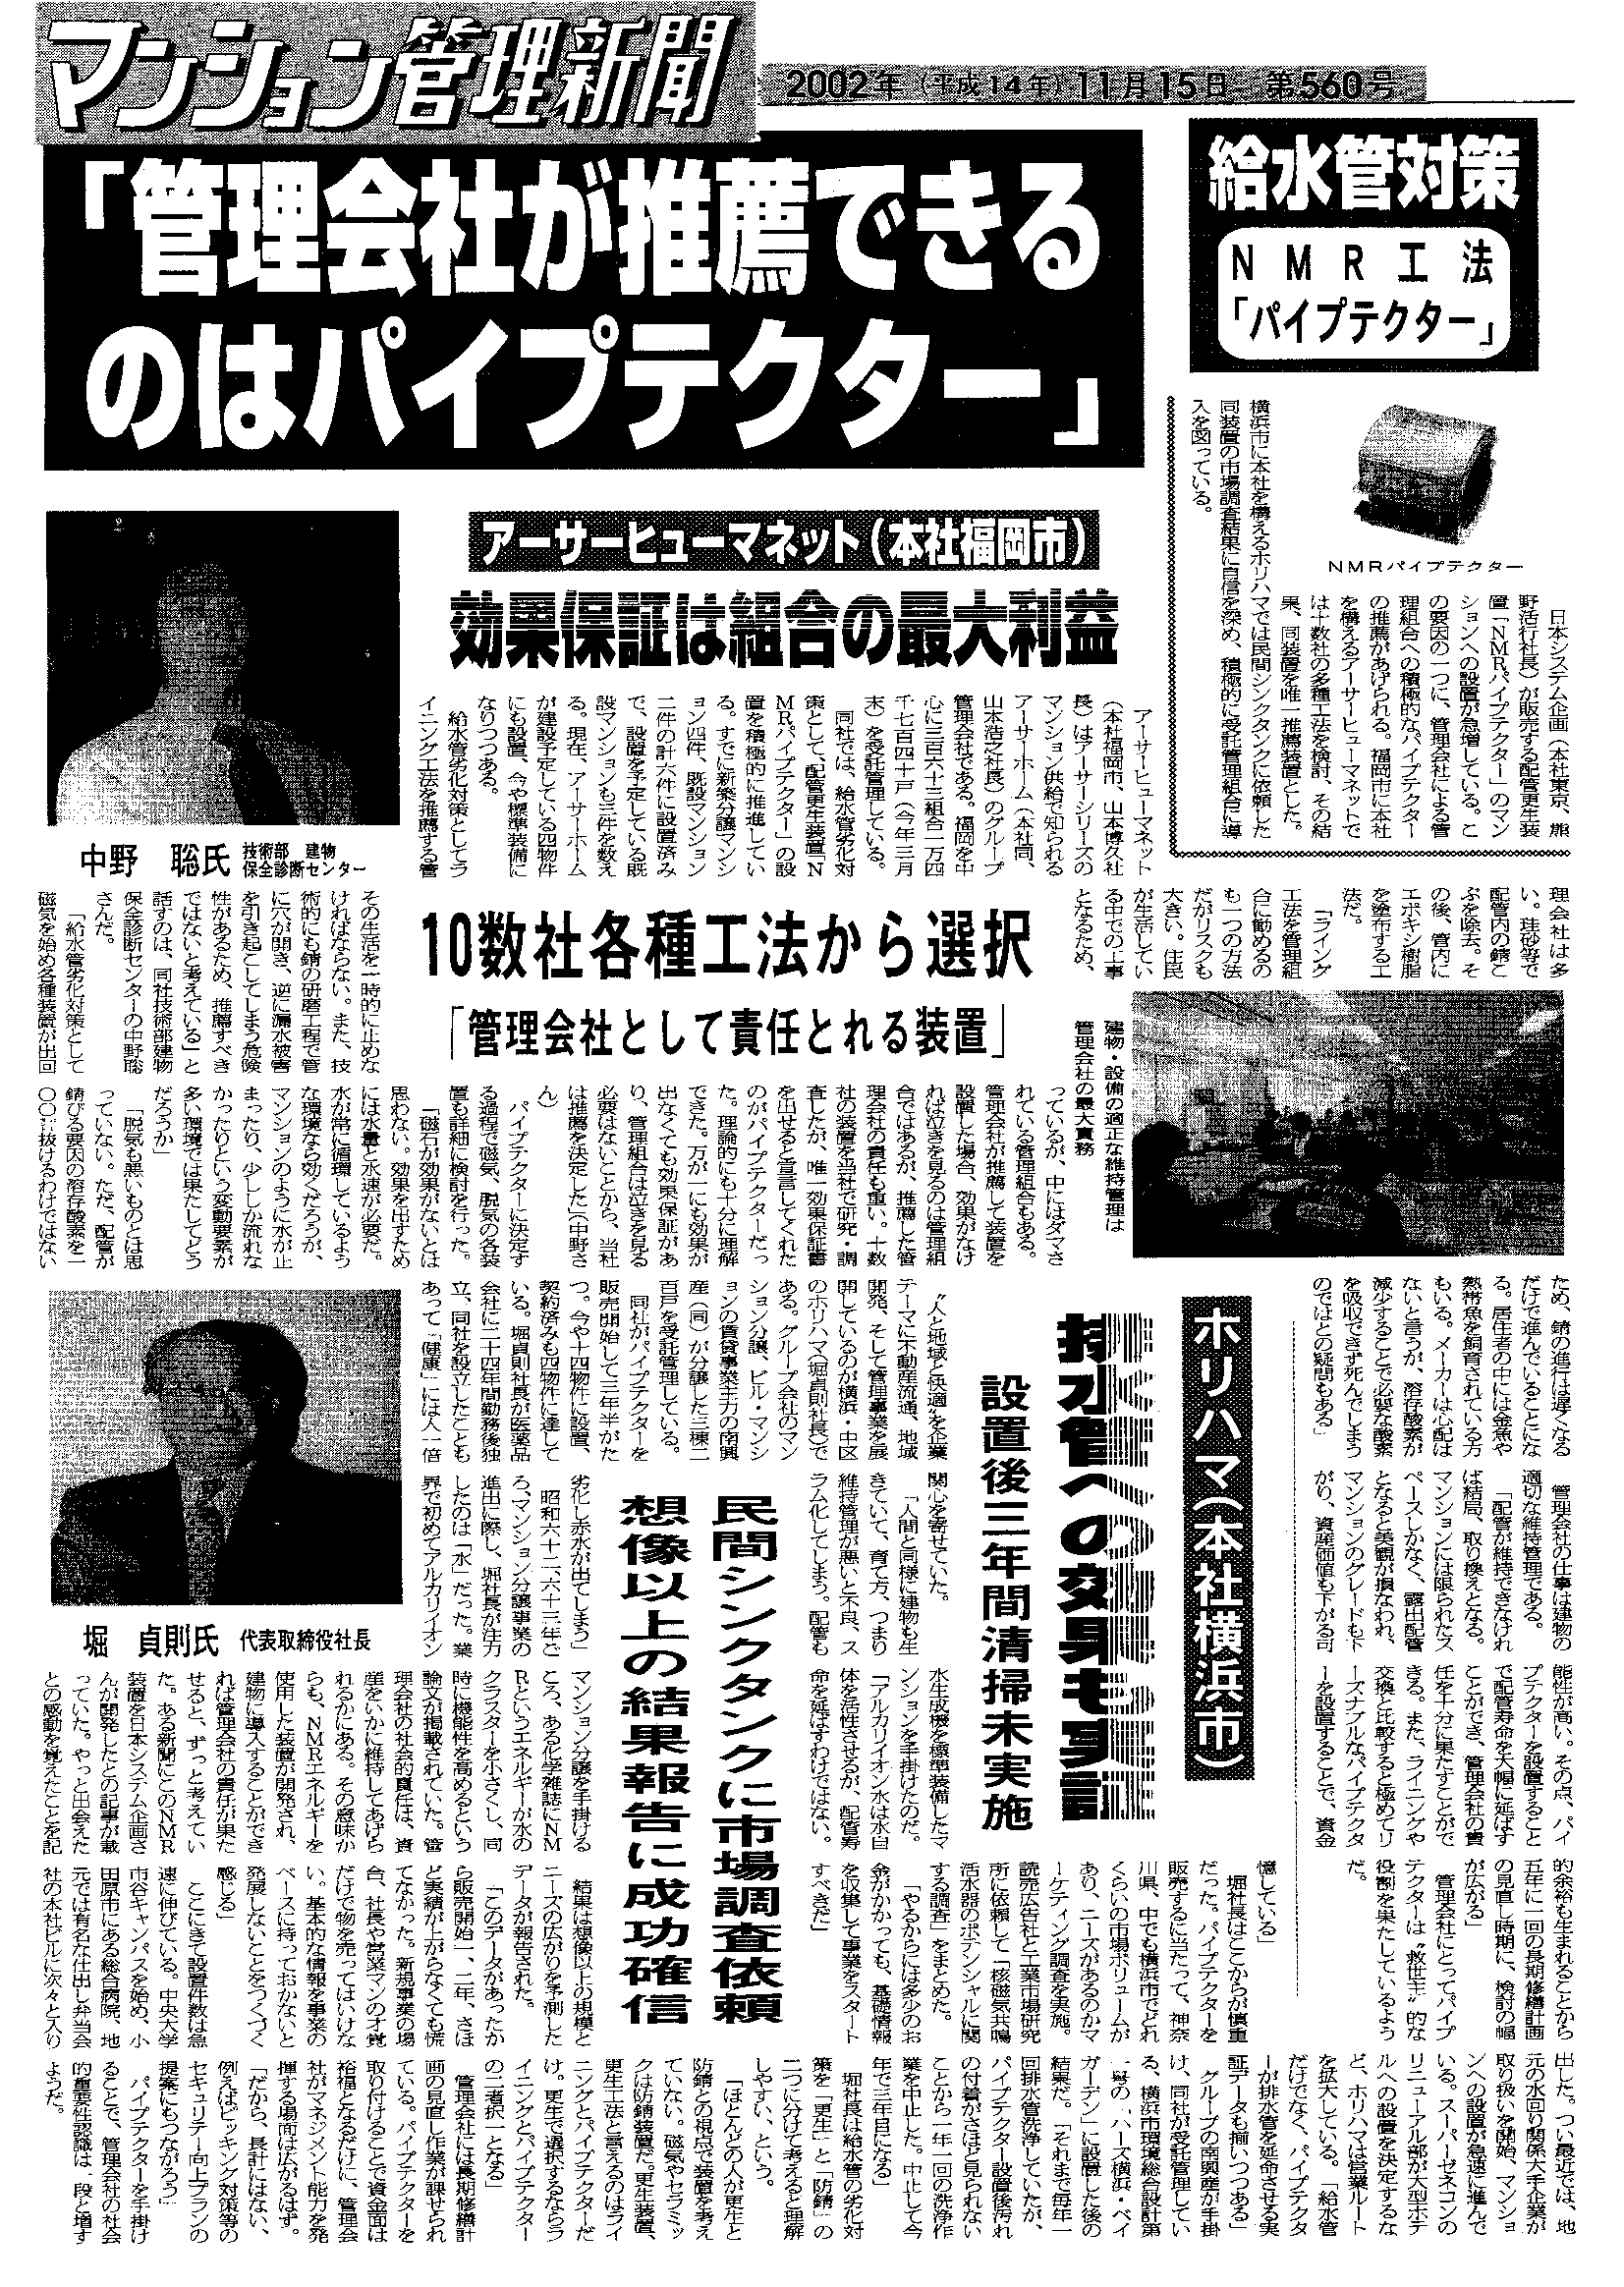 「マンション管理新聞」2002年11月15日 第560号